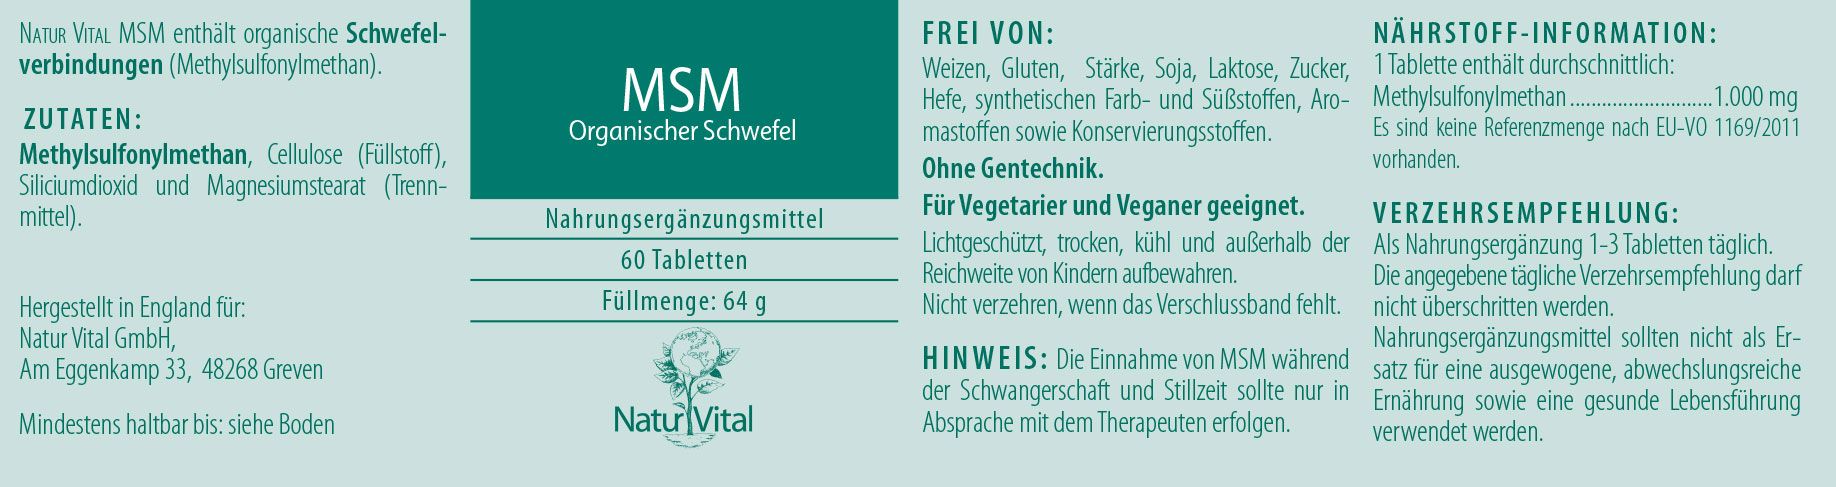 Etikett MSM Organischer Schwefel von Natur Vital beinhaltet 60 Tabletten